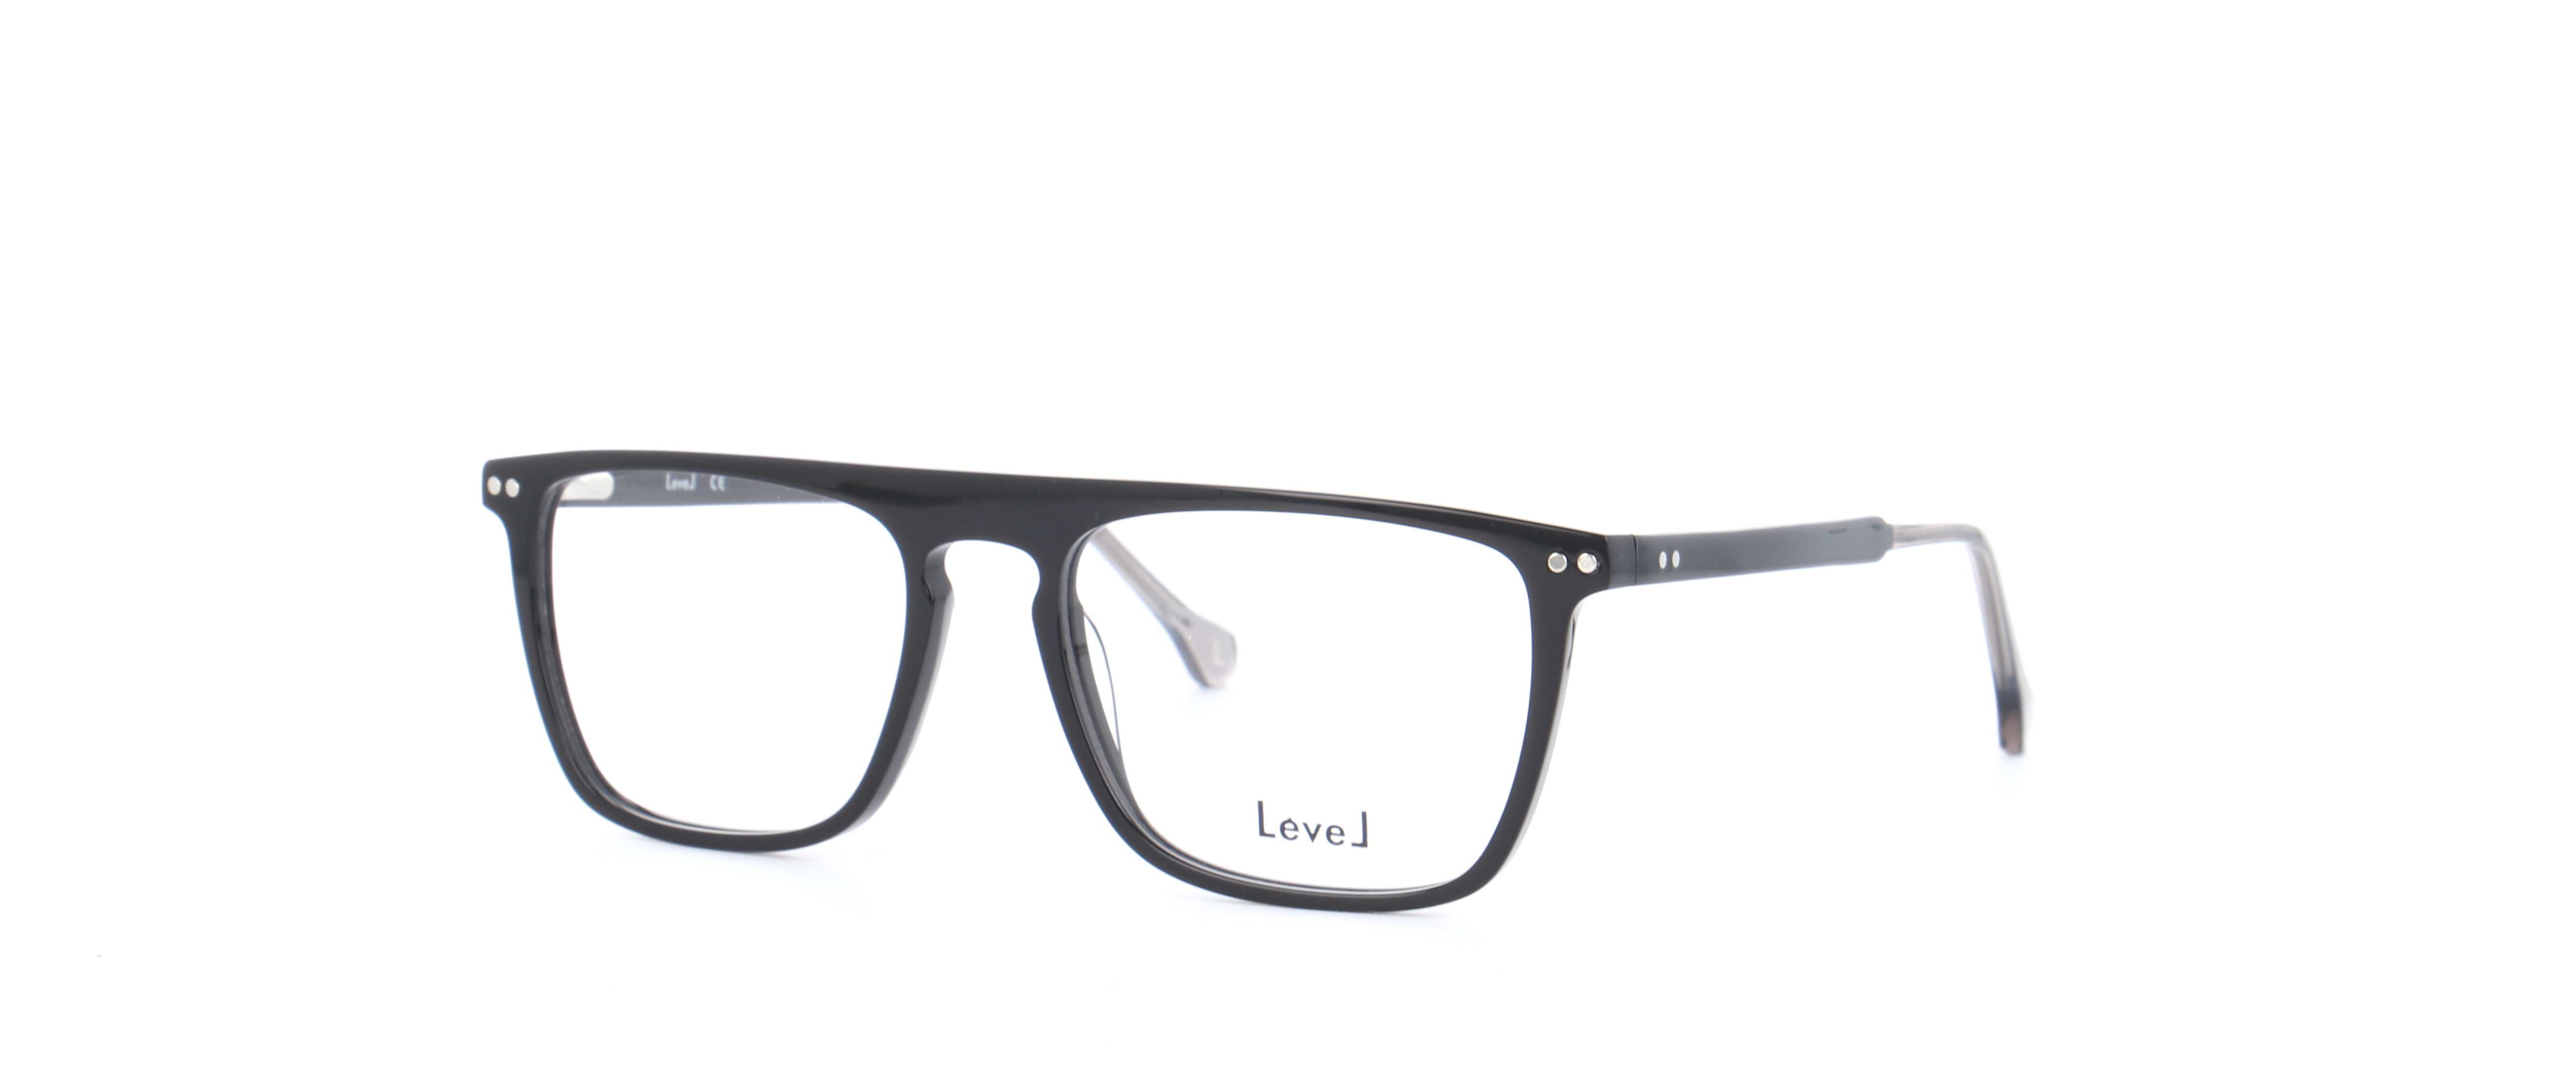 lunettes-de-vue-level-le-2198-noir-53-17-homme-noir-rectangle-cercl-e